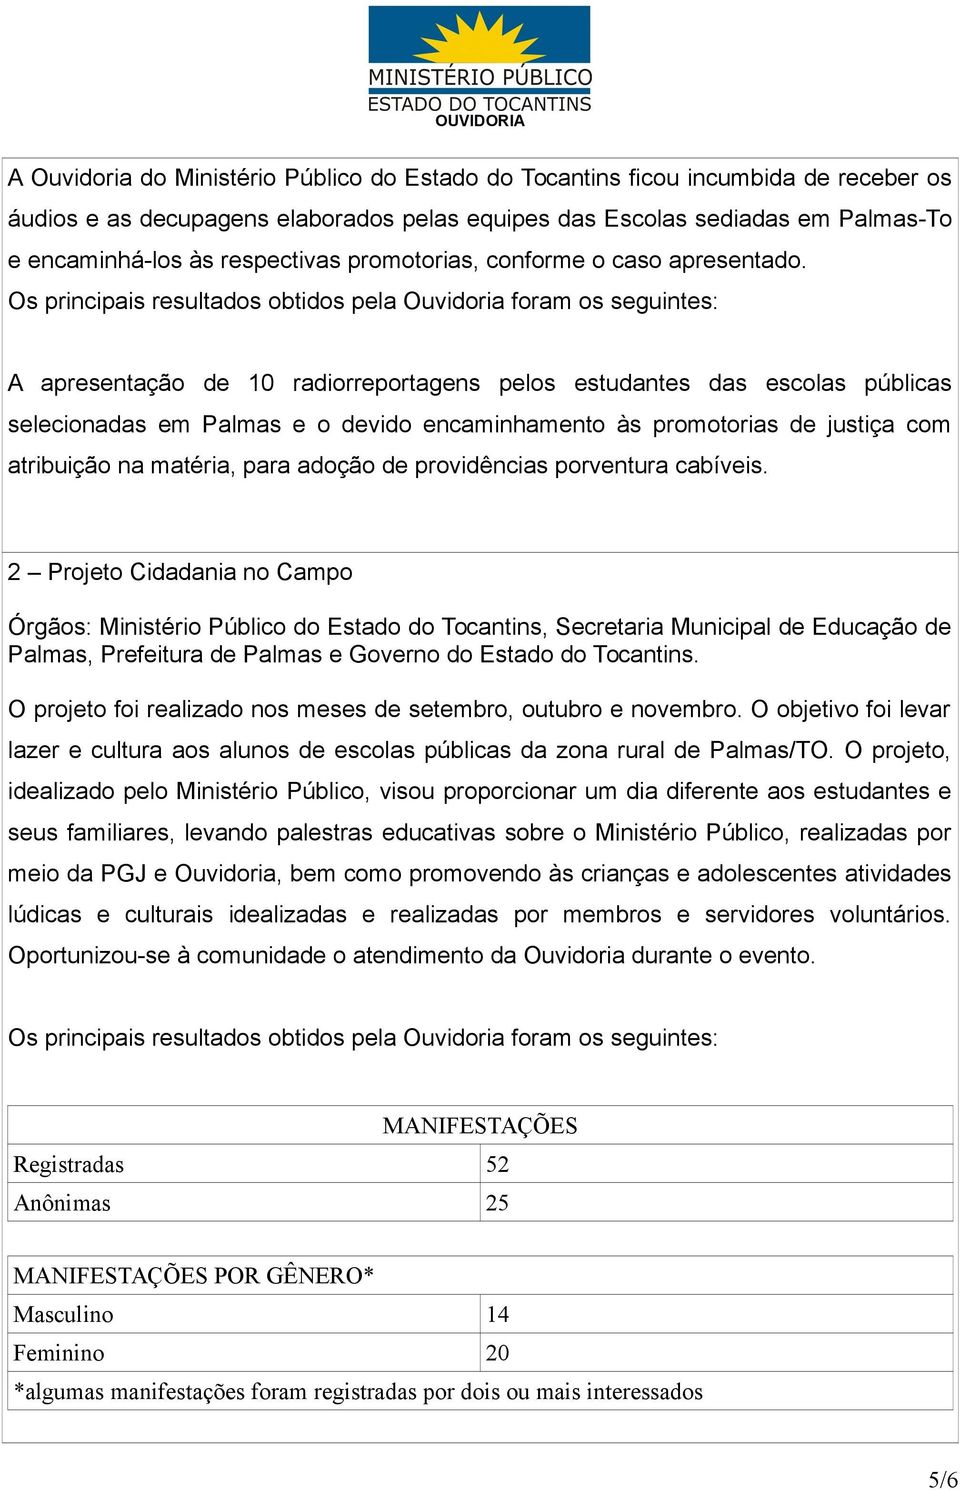 Os principais resultados obtidos pela Ouvidoria foram os seguintes: A apresentação de 10 radiorreportagens pelos estudantes das escolas públicas selecionadas em Palmas e o devido encaminhamento às